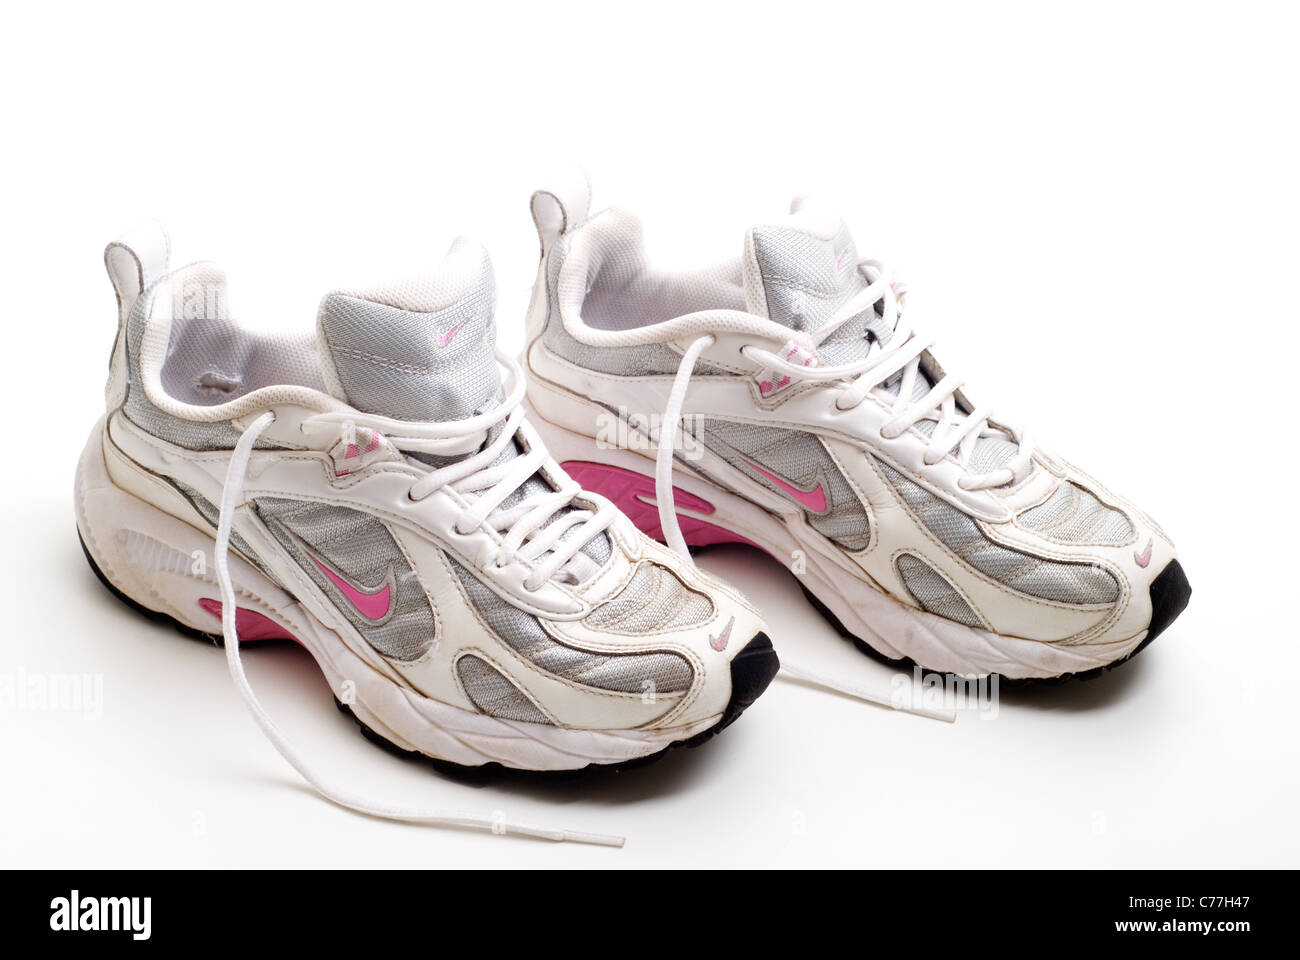 Nike running shoes immagini e fotografie stock ad alta risoluzione - Alamy